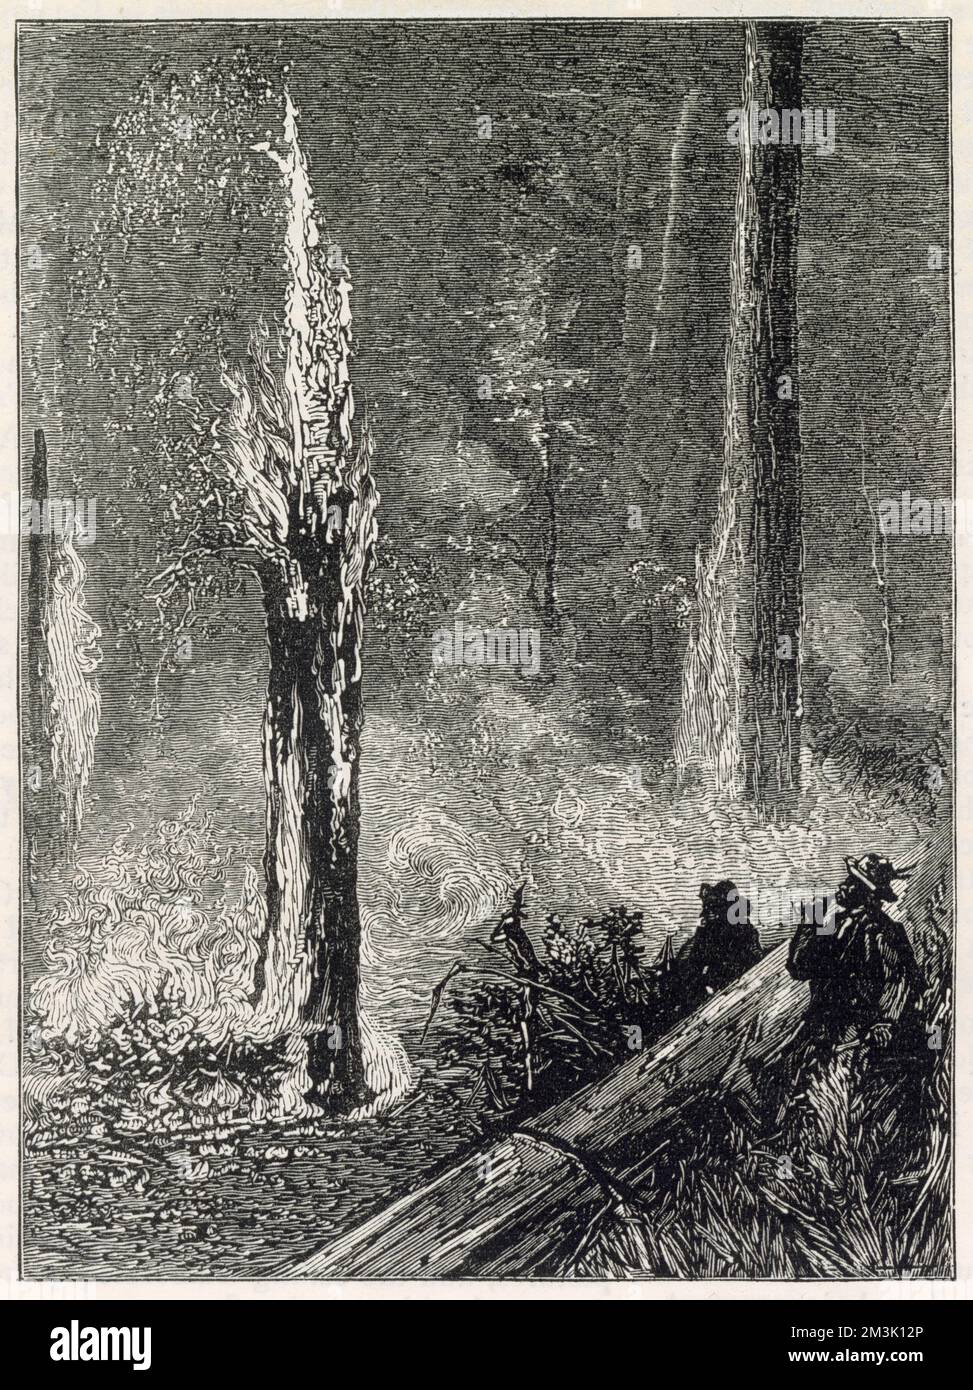 Mehrere Männer verbrennen eine Lichtung im Wald von Kalifornien, vielleicht um Platz für Wohnungen oder Ackerland zu schaffen. Stockfoto